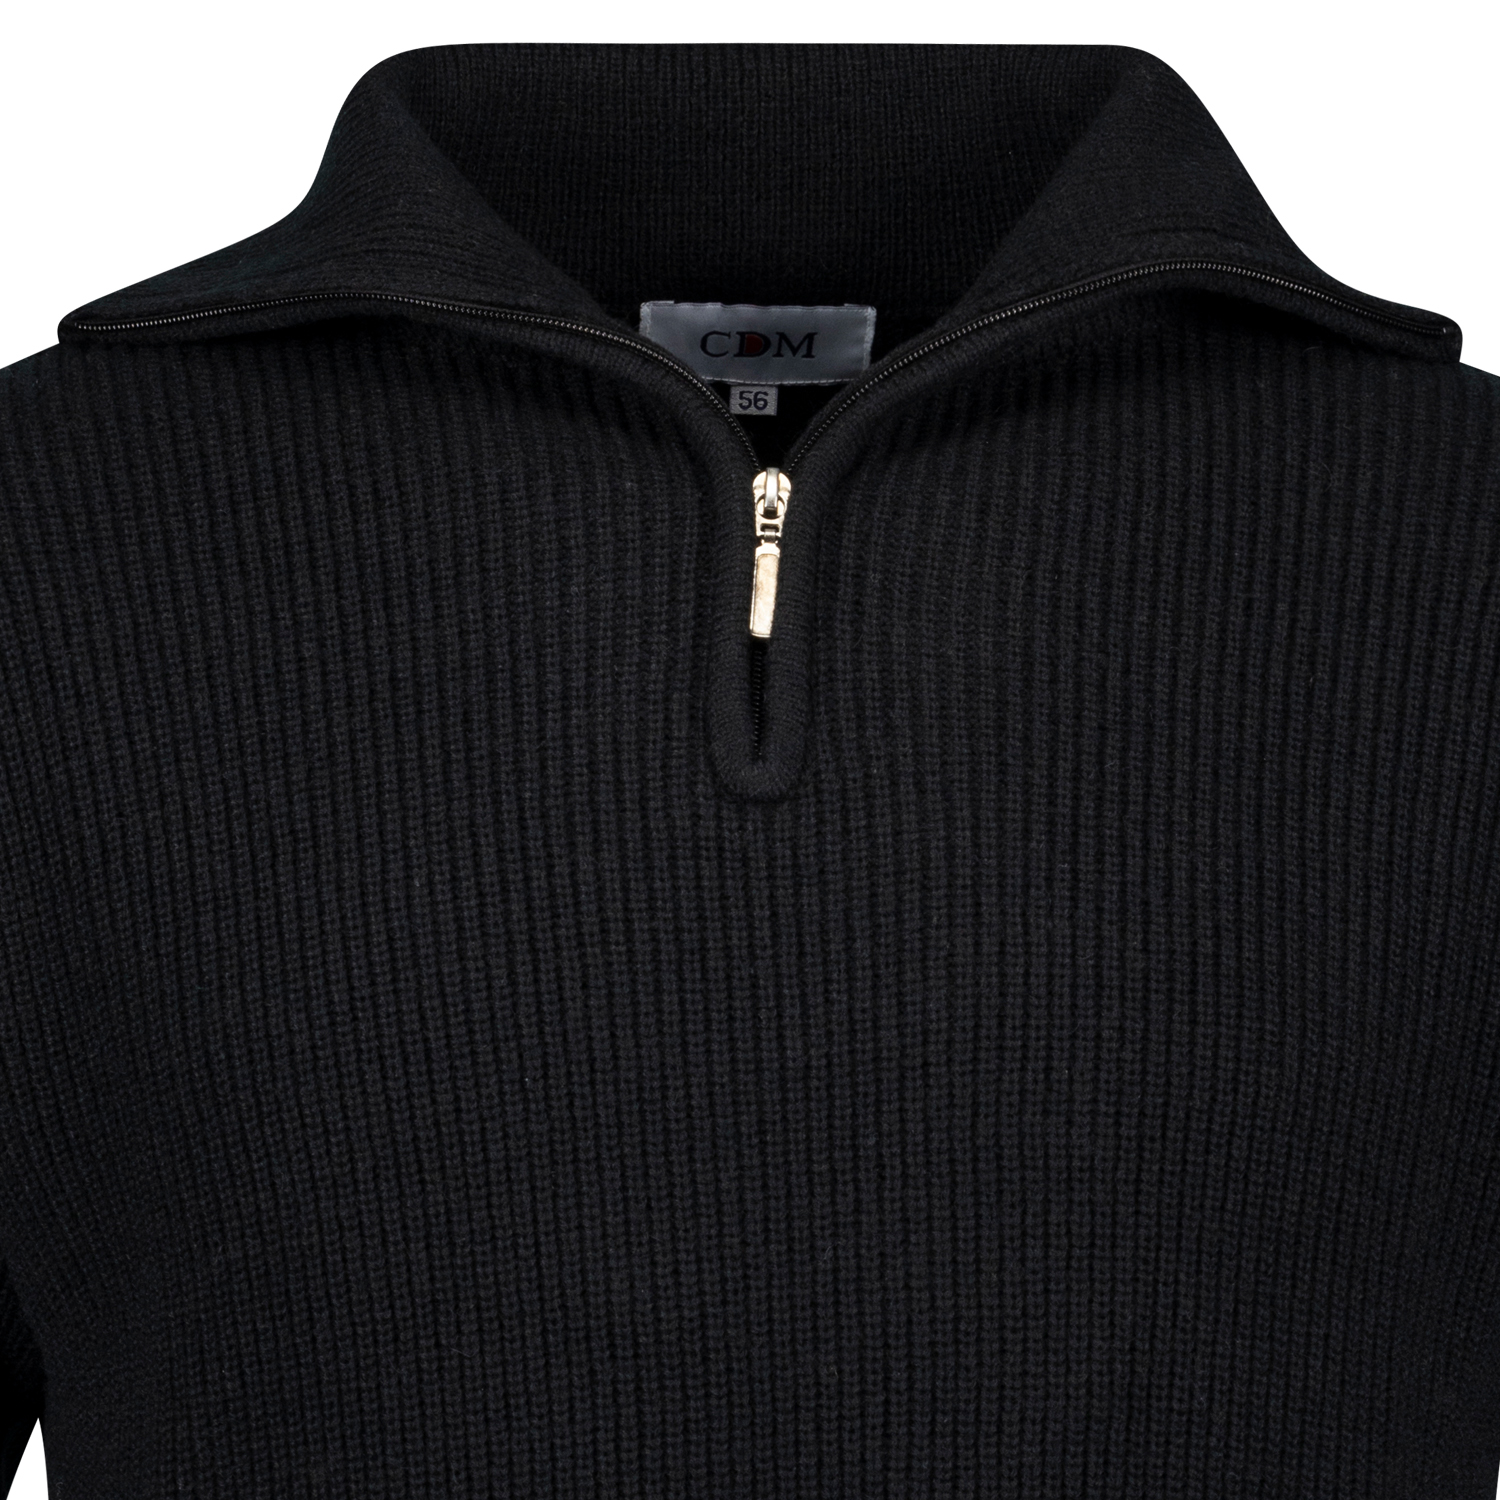 CDM Strick-Pullover mit Troyerkragen in schwarz bis Übergröße 9XL